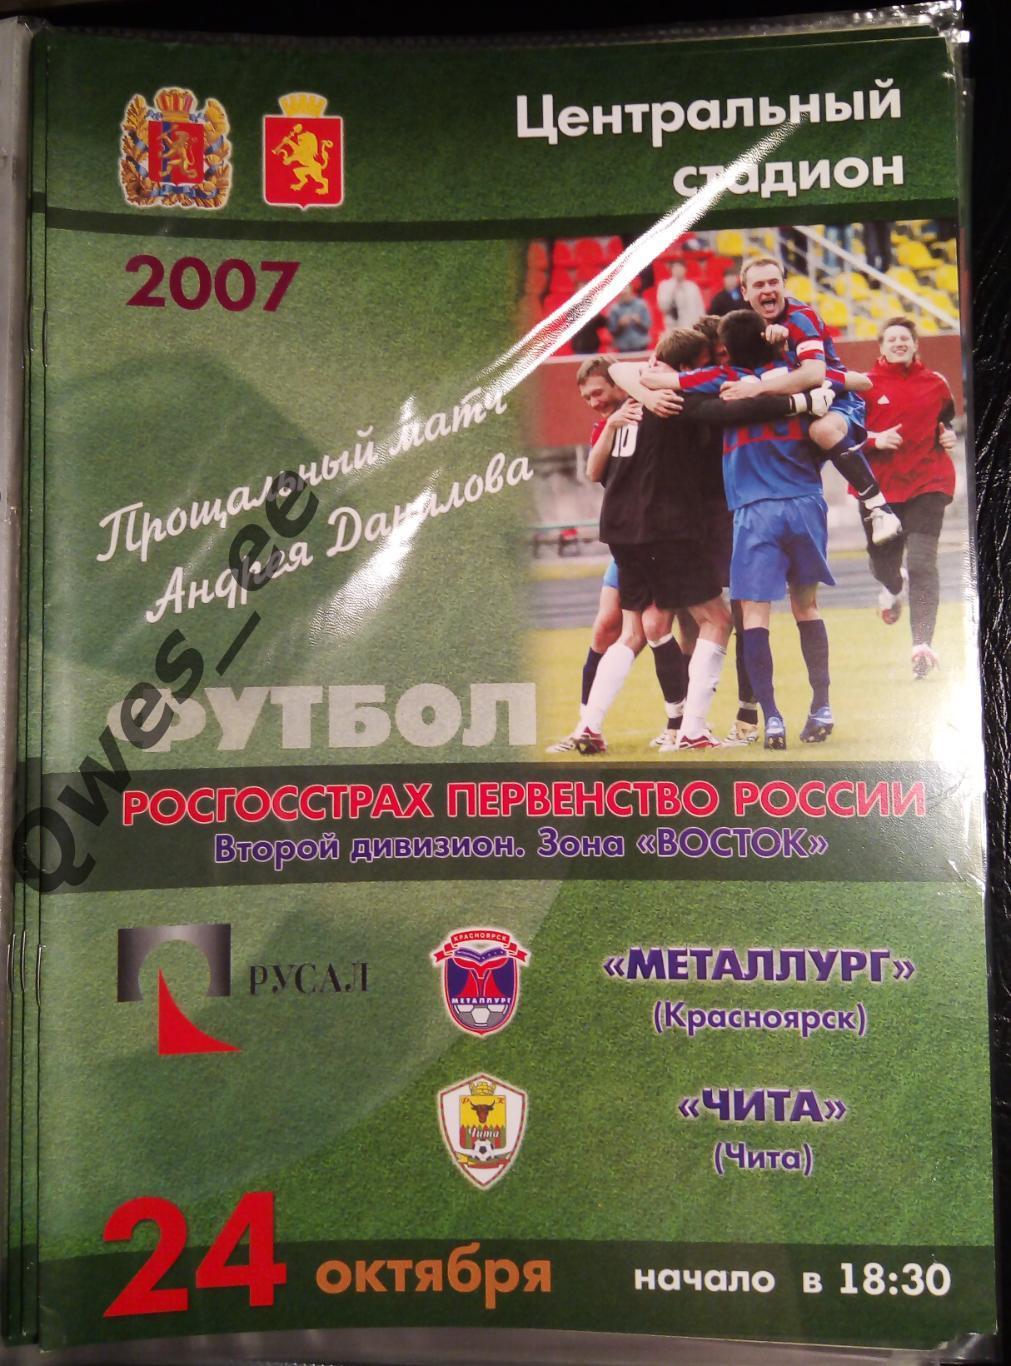 Металлург Красноярск - Чита 24 октября 2007 Прощальный матч Андрей Данилов